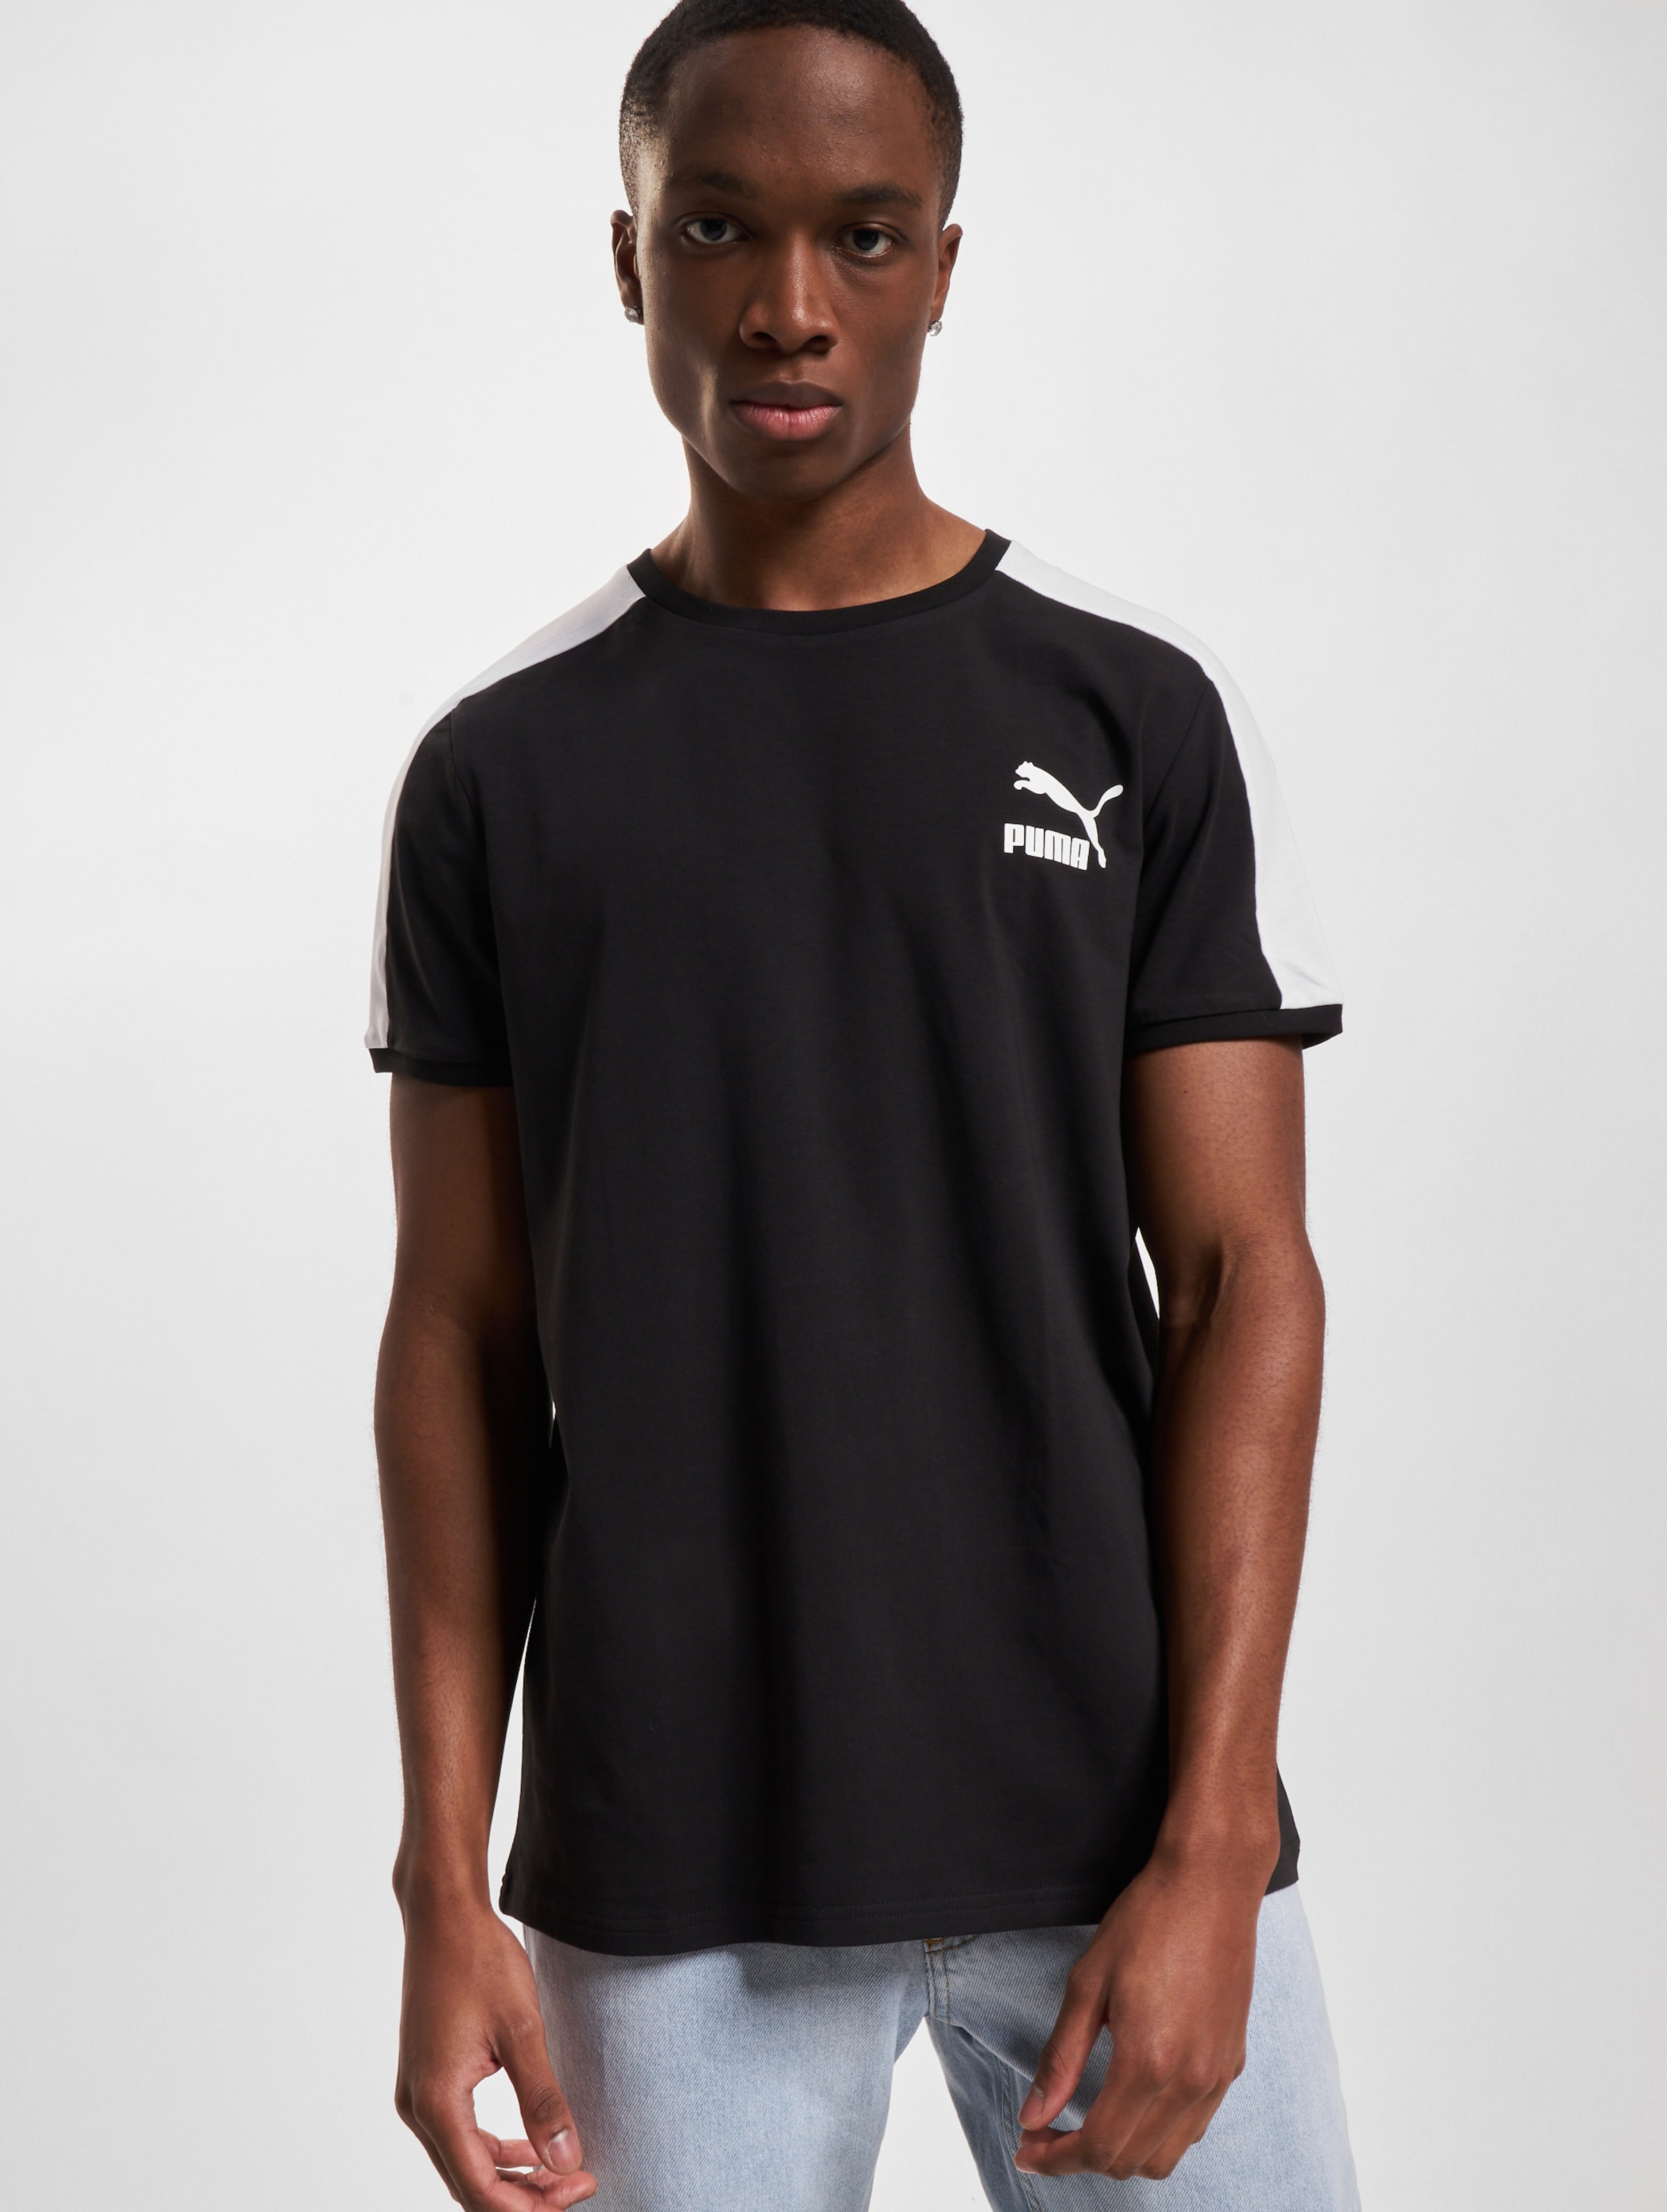 Puma T-Shirt Mannen op kleur zwart, Maat M